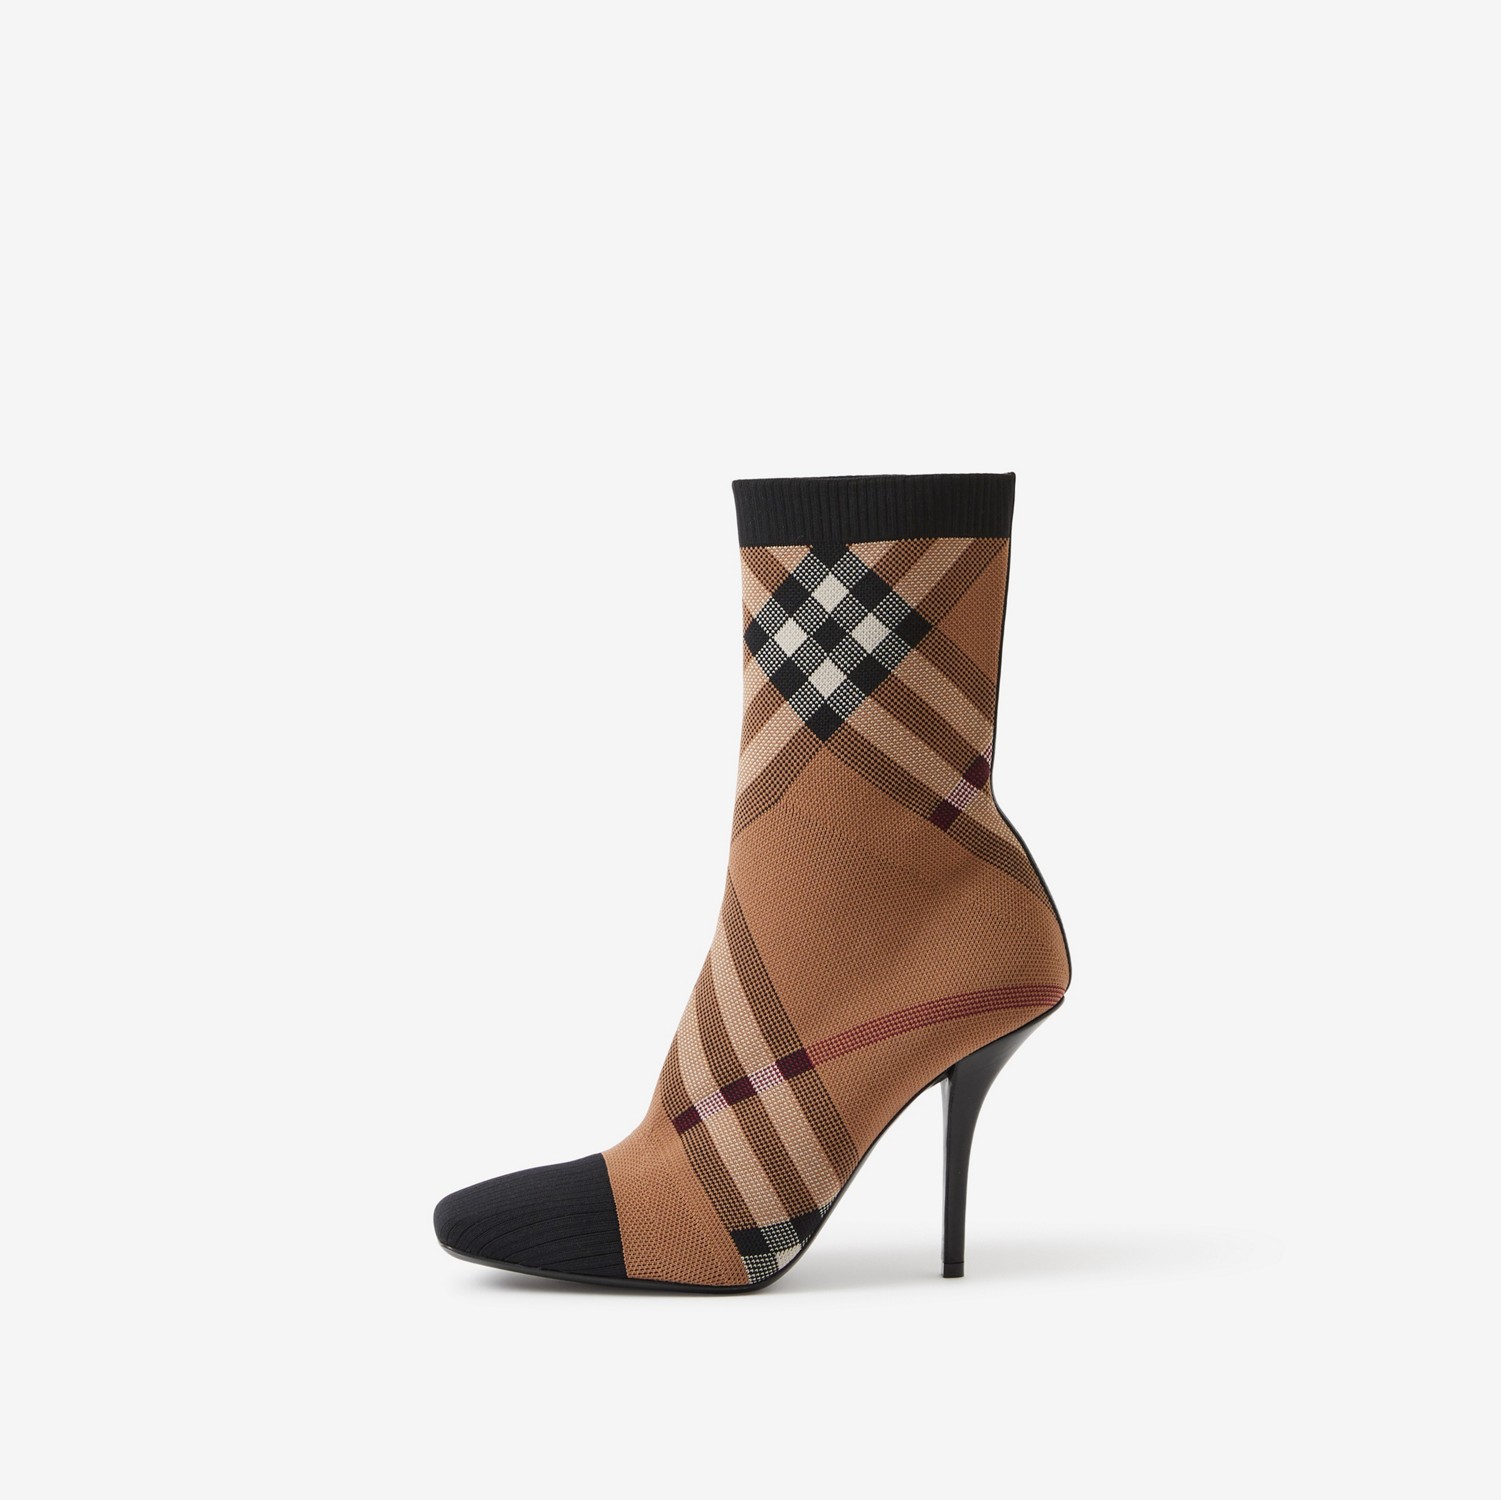 Gestrickte Socken-Stiefeletten mit Karomuster (Birkenbraun) - Damen | Burberry®